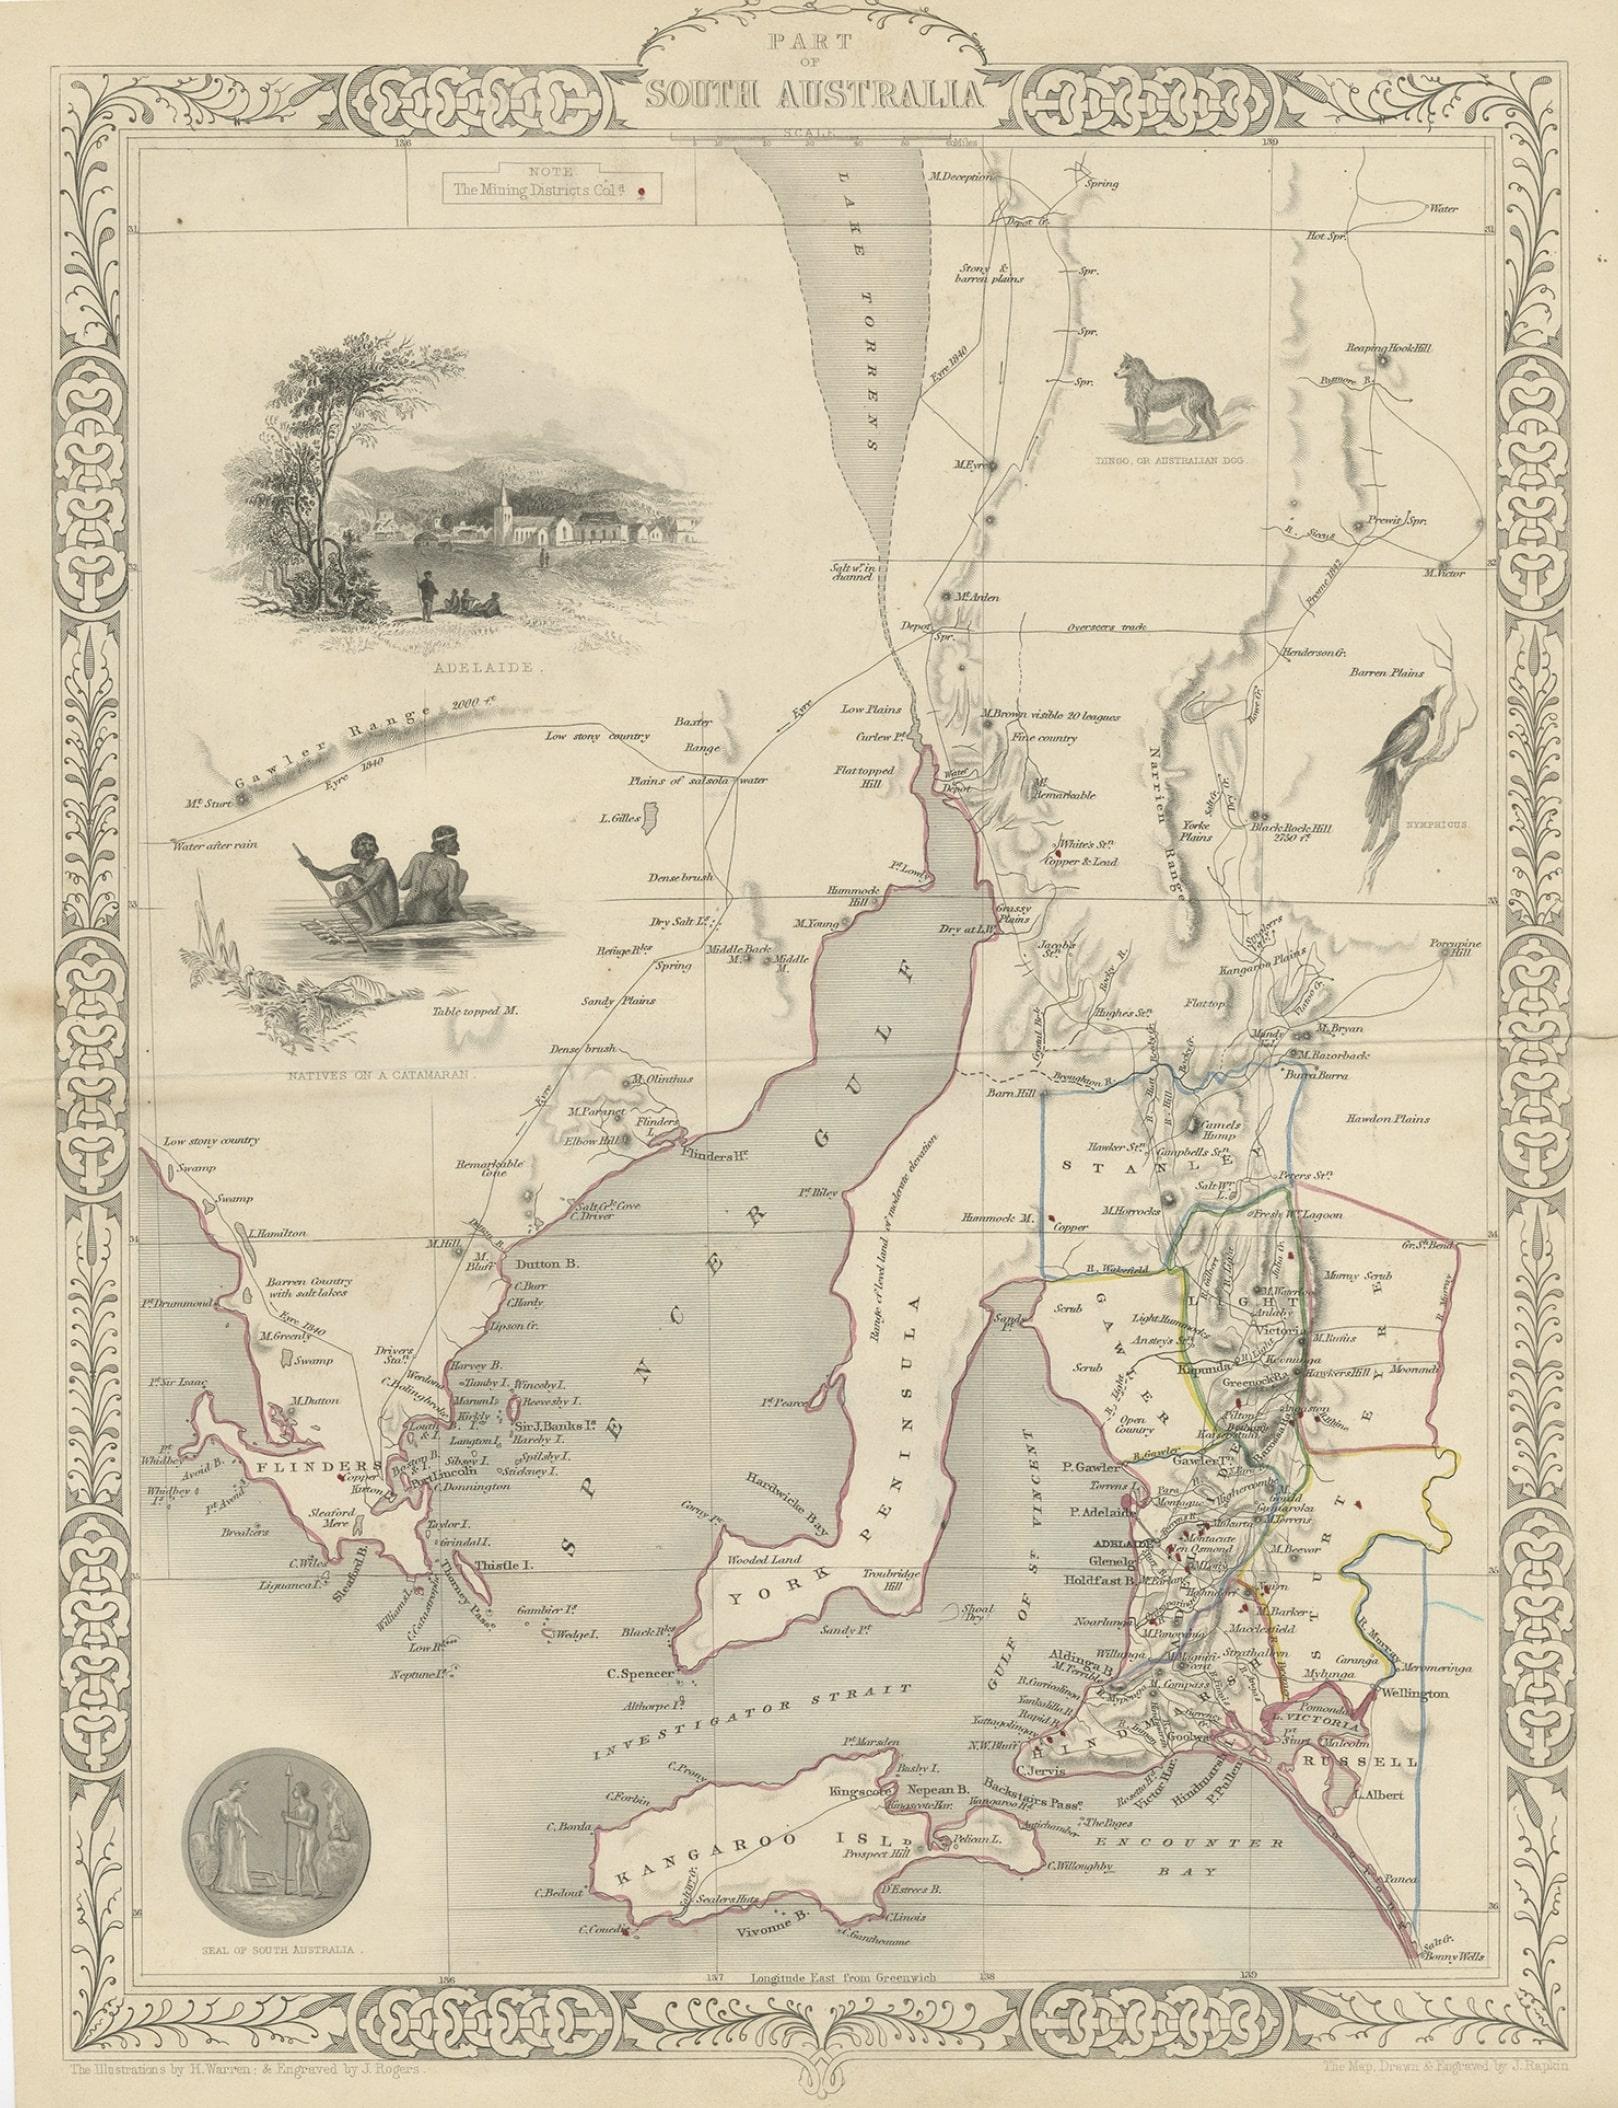 Antike Landkarte Australien mit dem Titel 'Part of South Australia'. 

Dekorative Karte eines Teils von Südaustralien, umgeben von Illustrationen von Adelaide, Eingeborenen auf einem Katamaran, einem australischen Hund und einem Nymphicus-Vogel